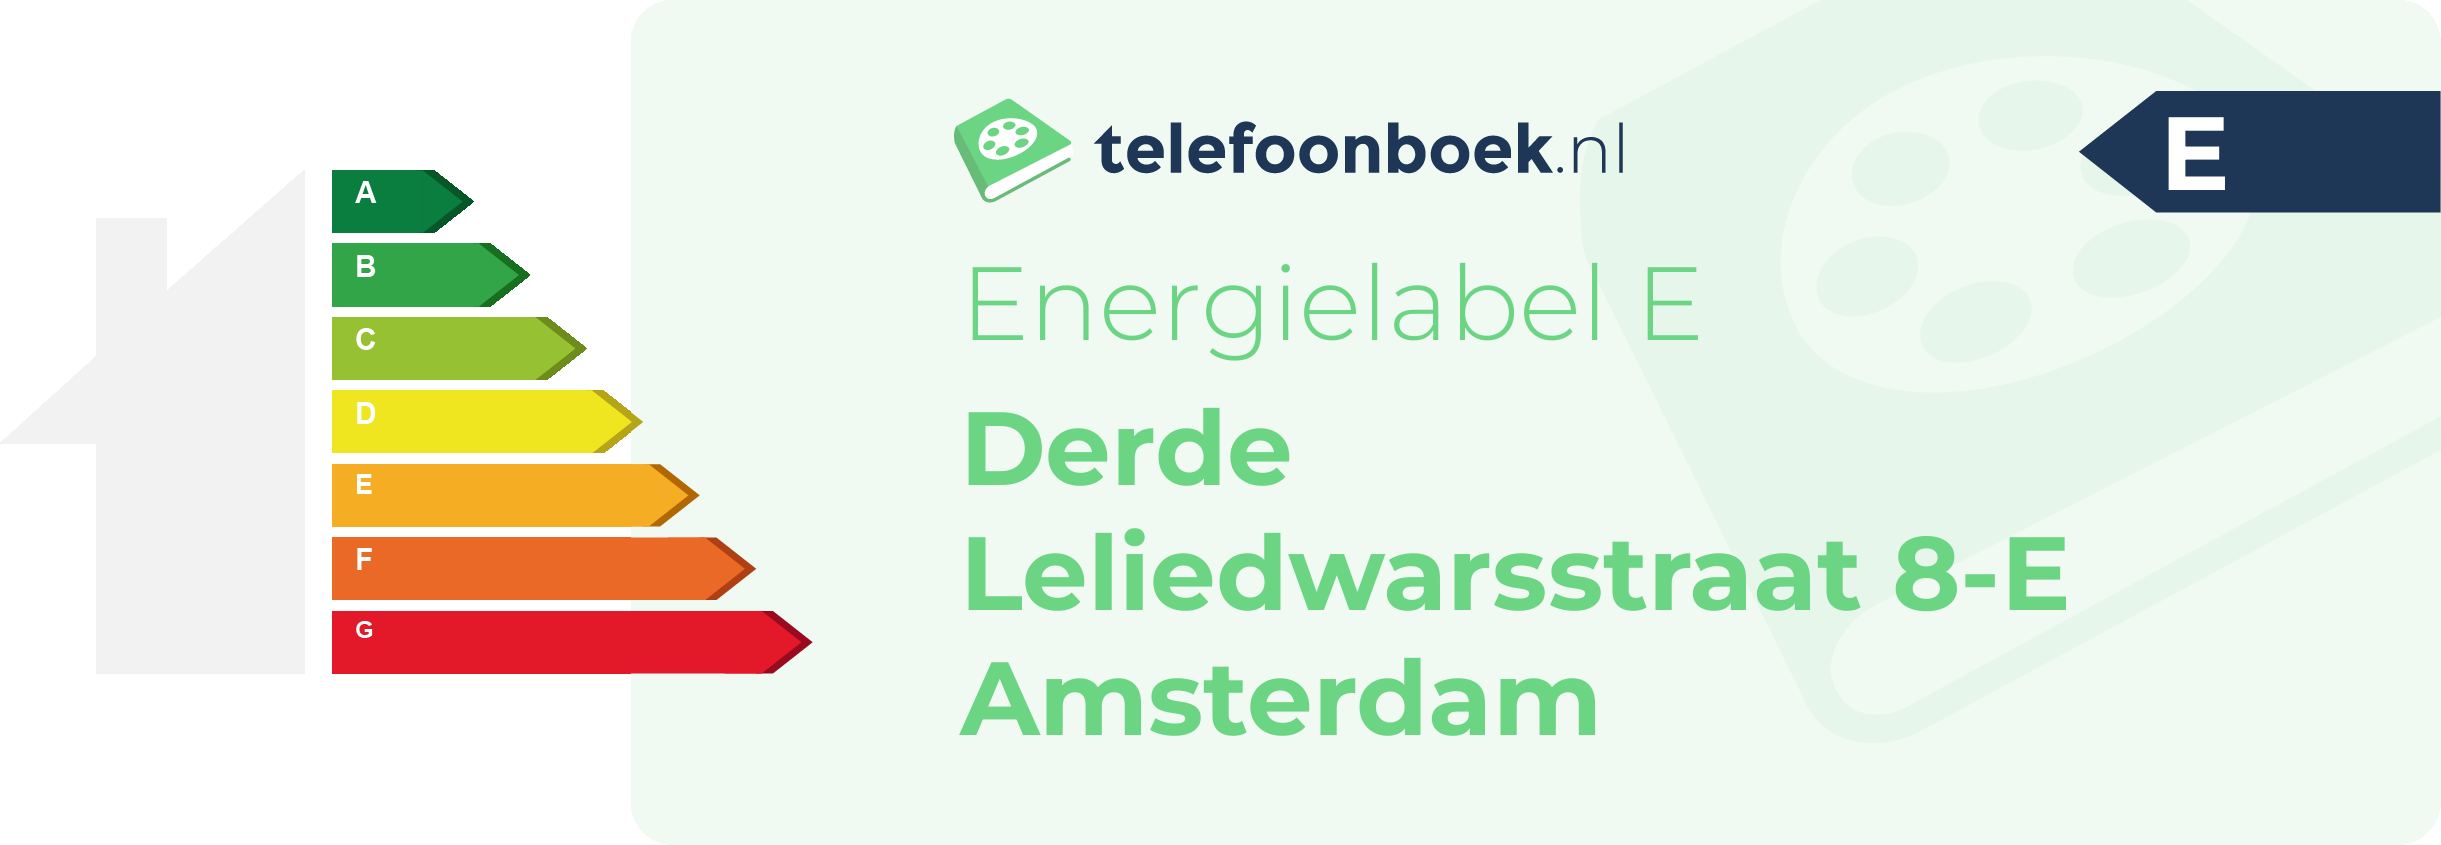 Energielabel Derde Leliedwarsstraat 8-E Amsterdam